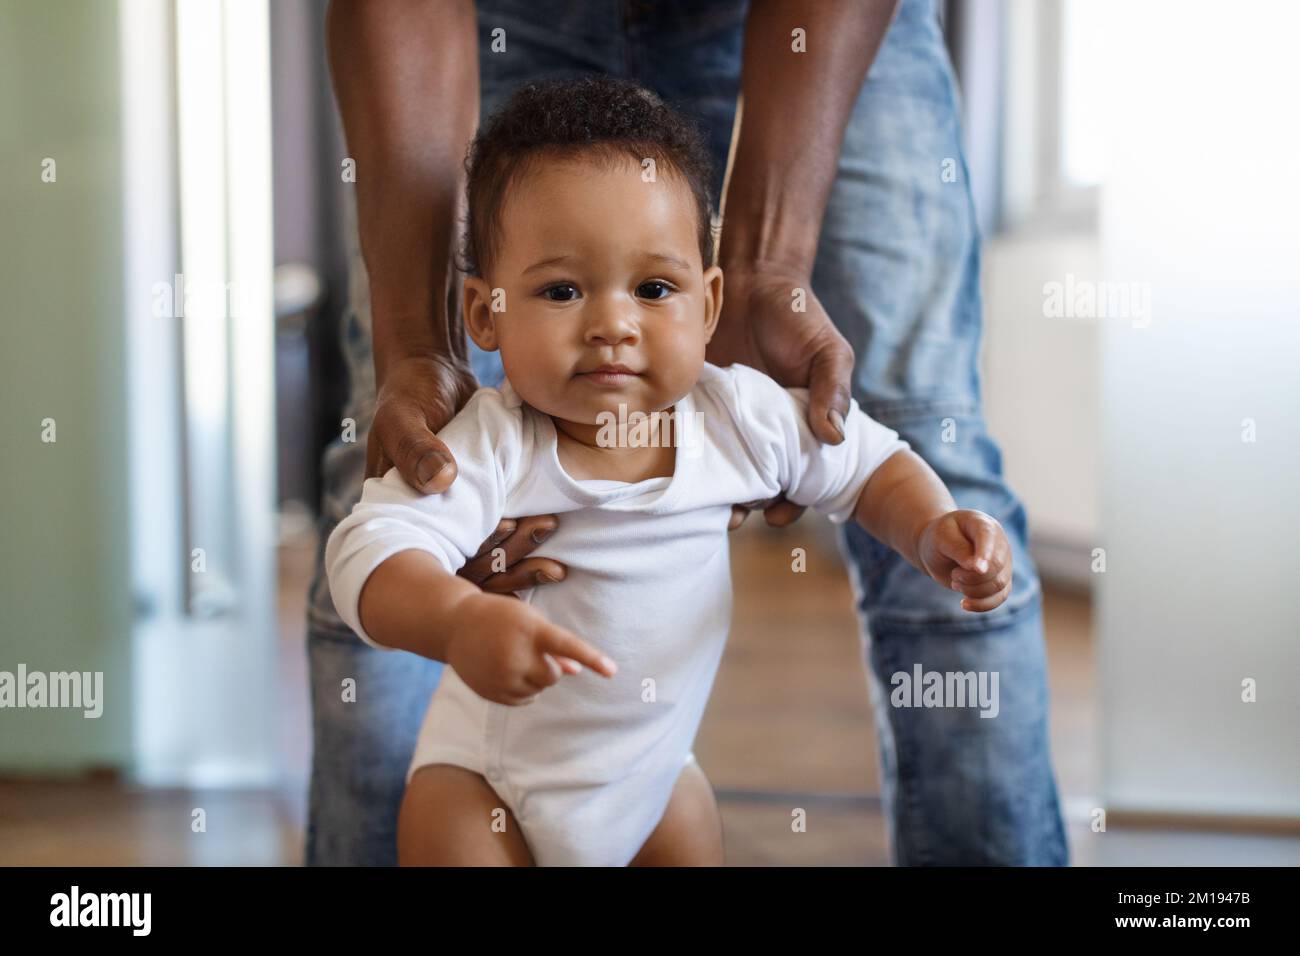 Retrato del adorable pequeño bebé negro caminando con la ayuda del padre en la habitación Foto de stock